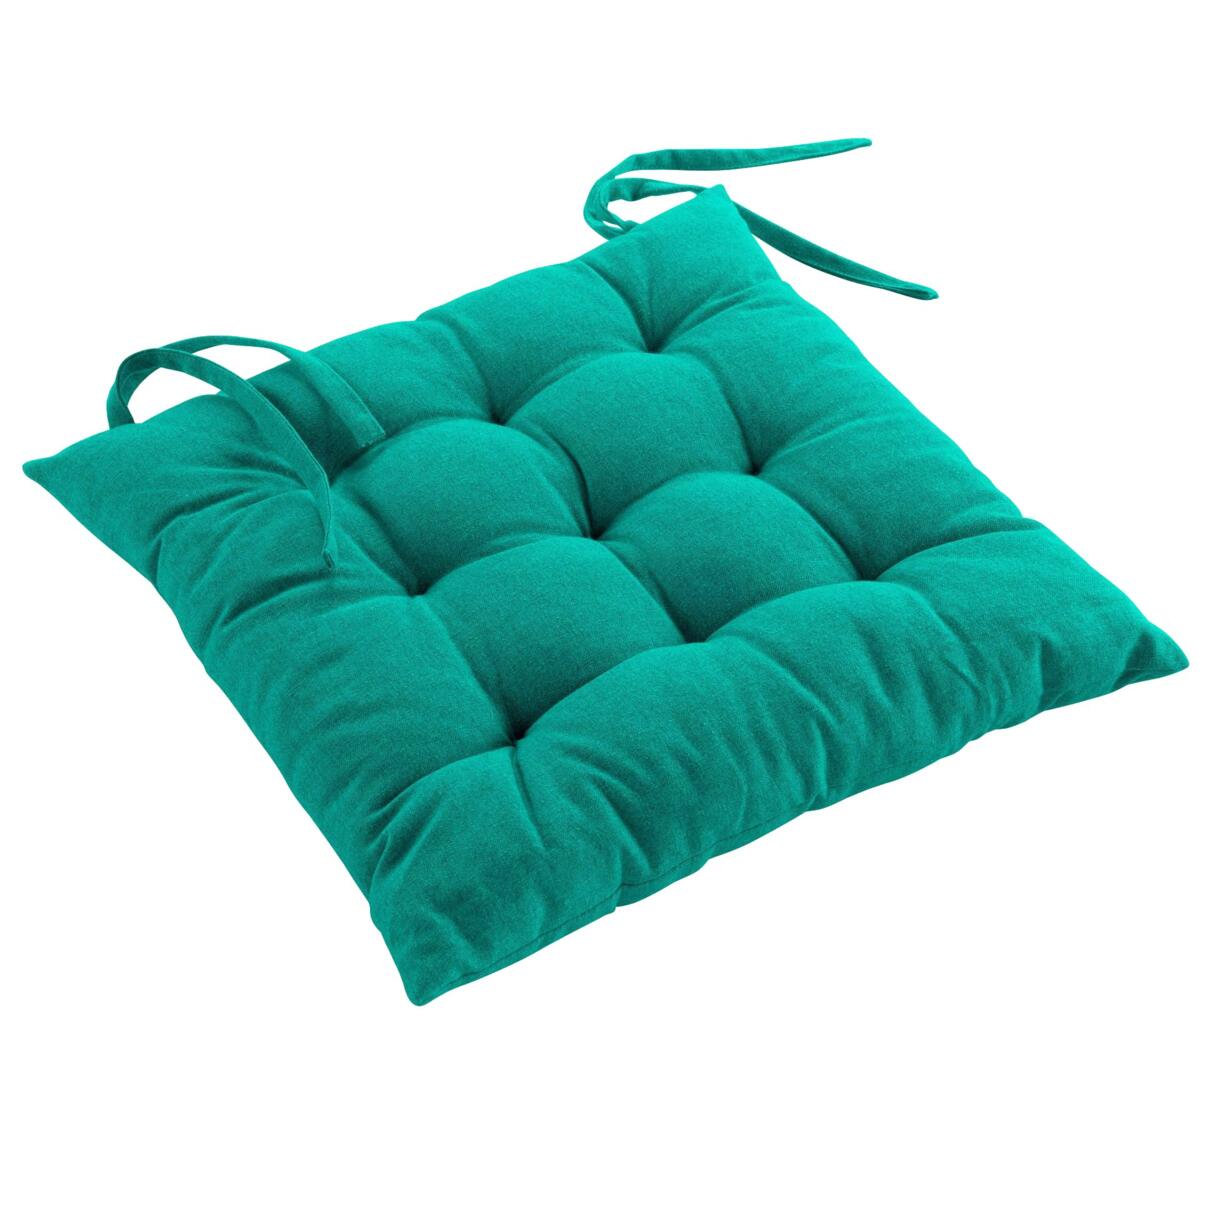 Cuscino per sedia cotone riciclato Mistral Verde smeraldo 1